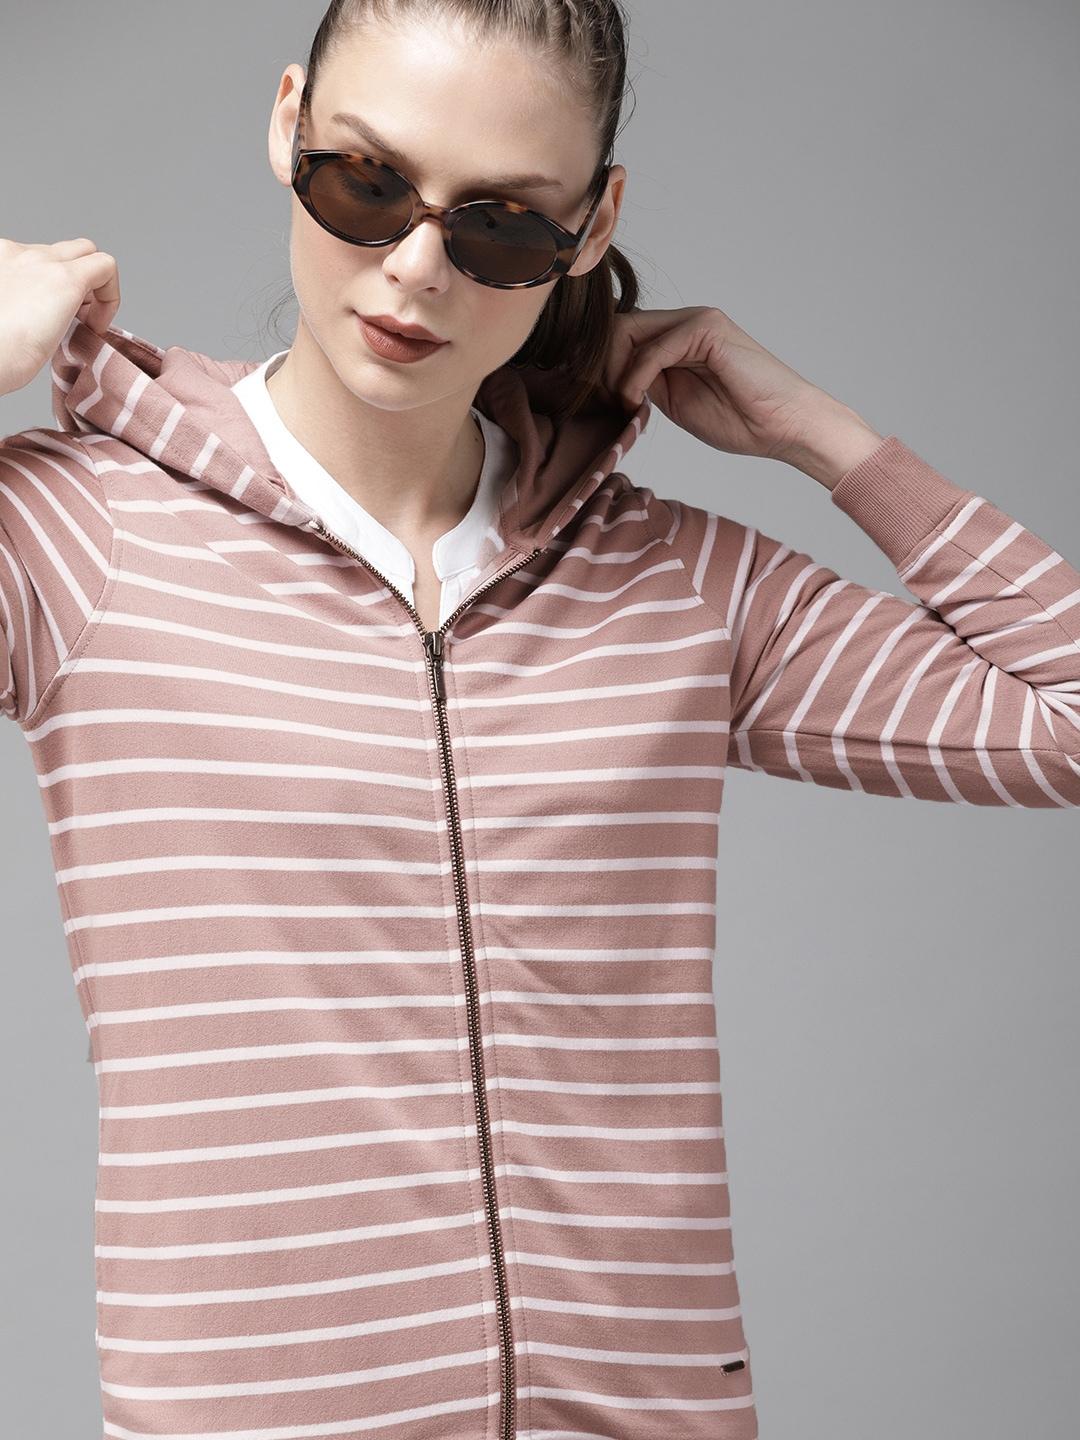 roadster women pink & white striped hooded sweatshirt